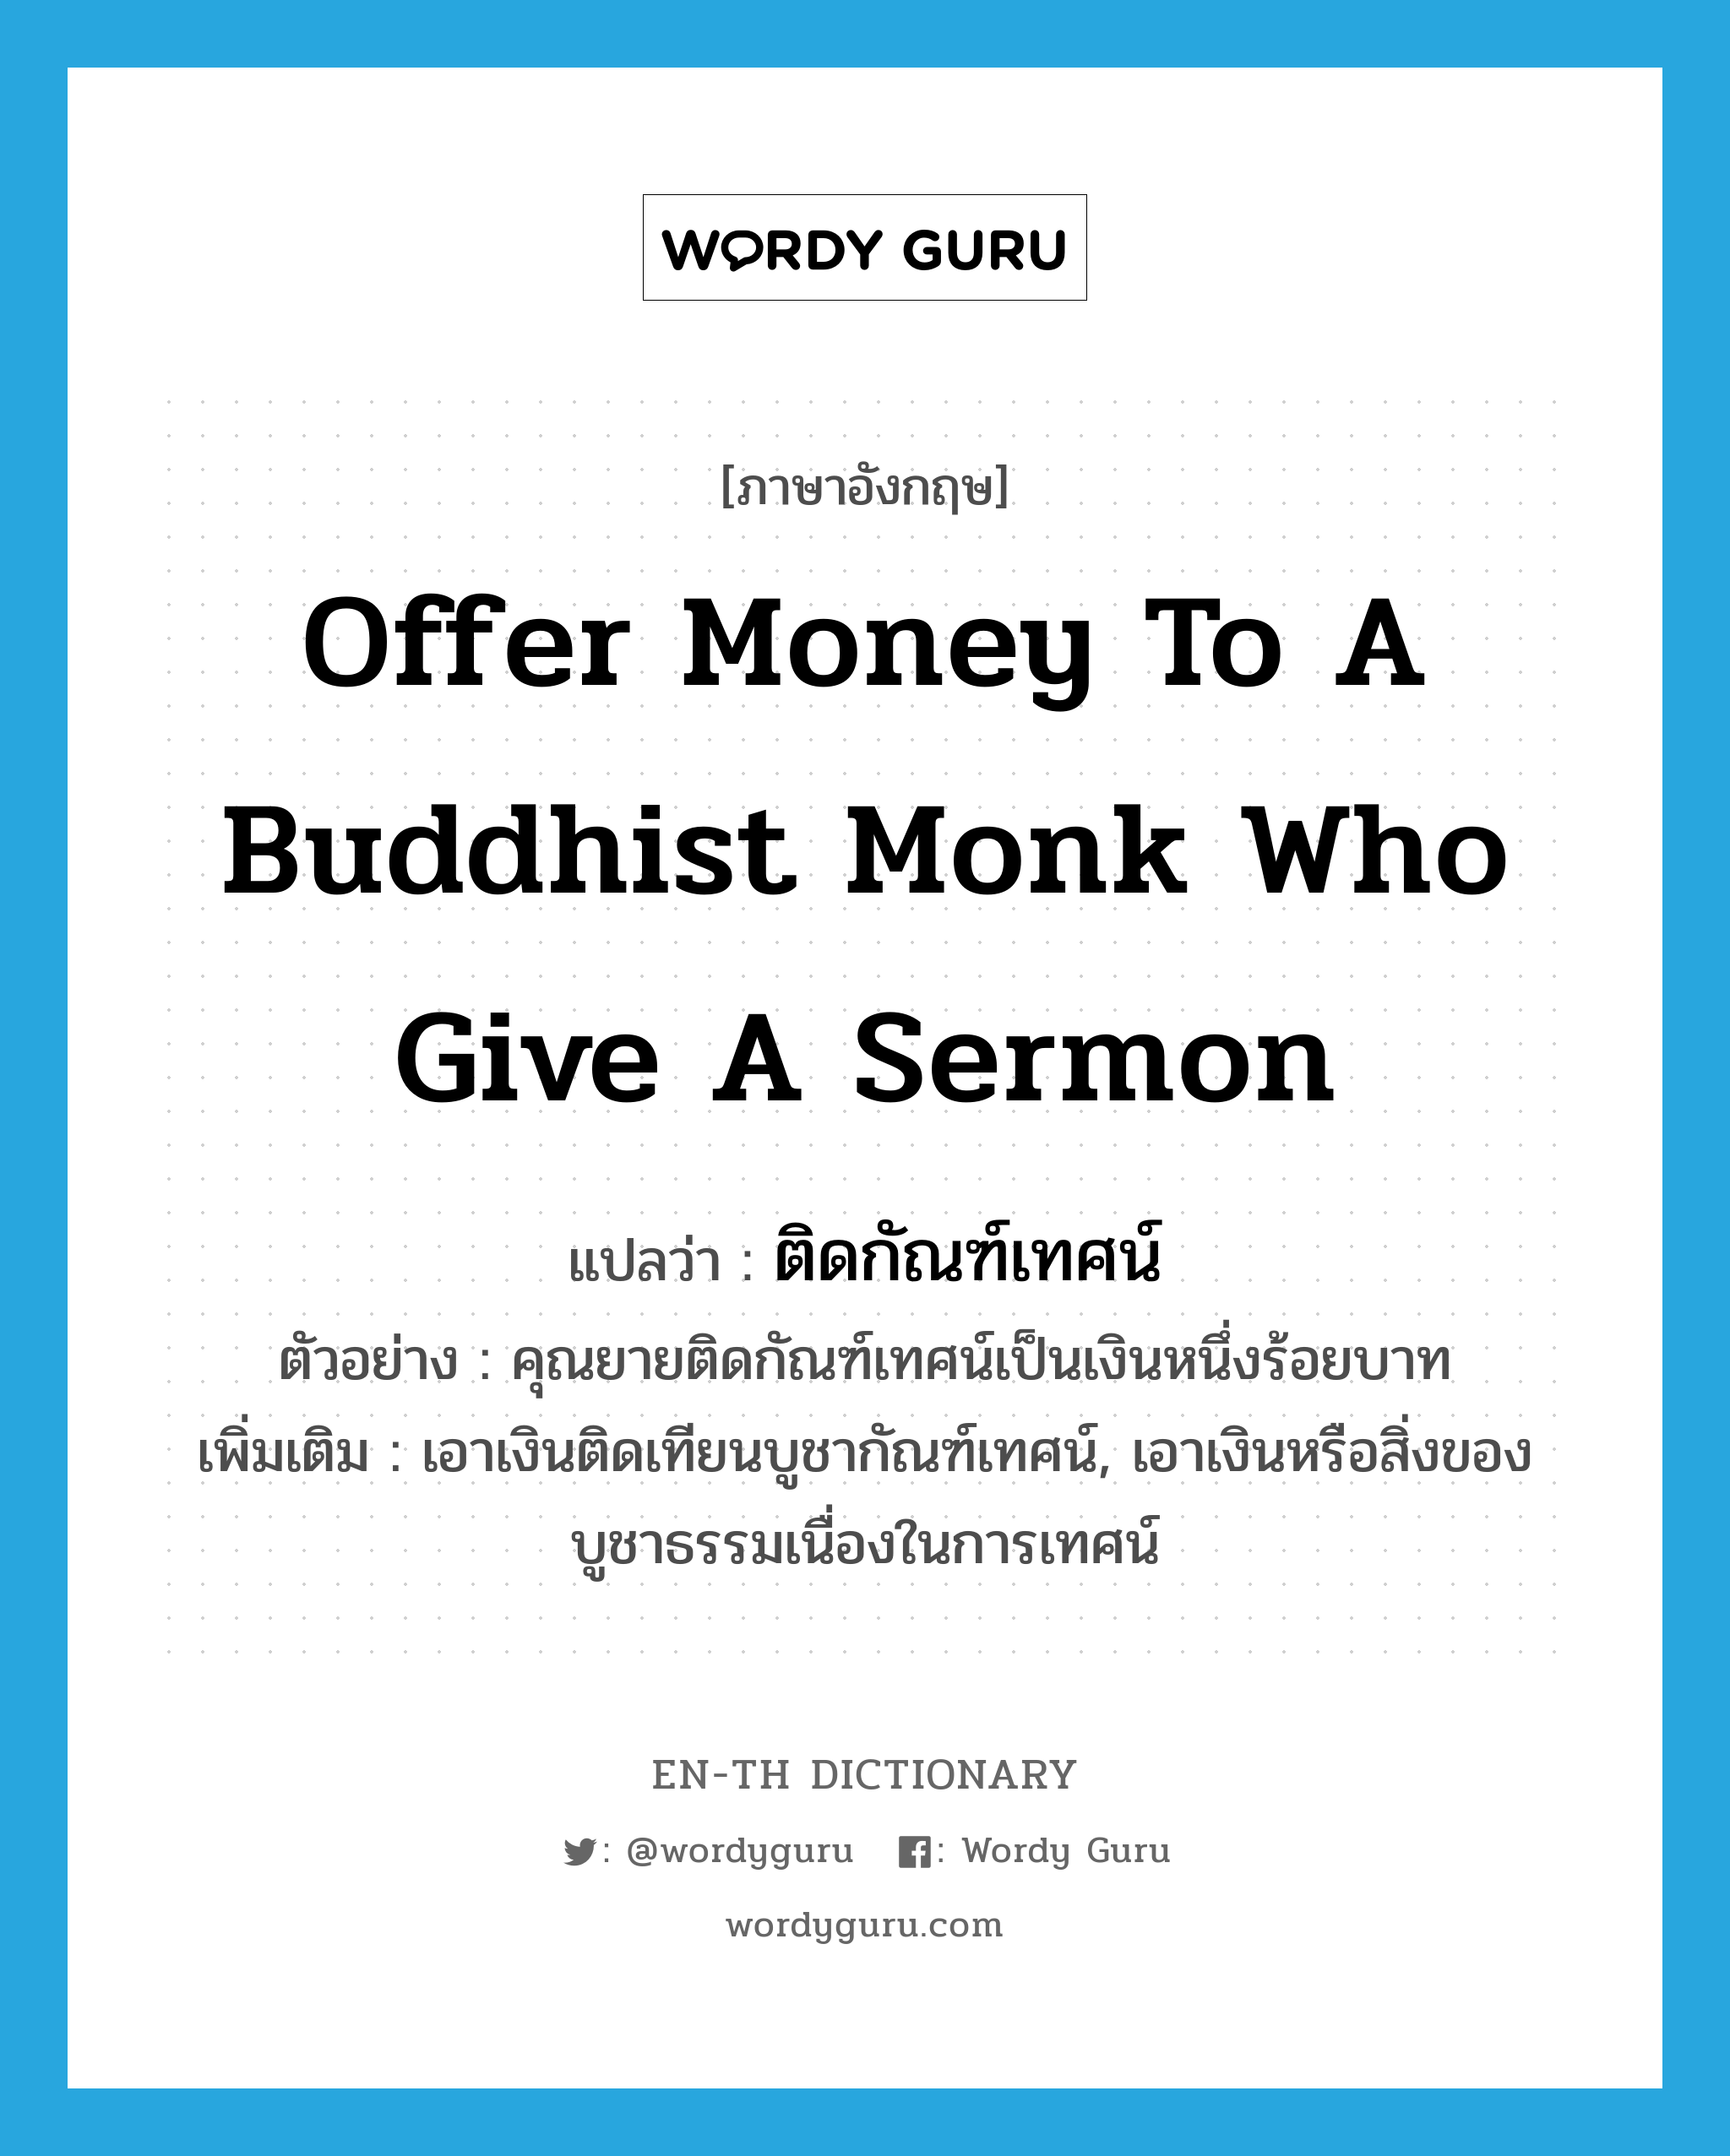 ติดกัณฑ์เทศน์ ภาษาอังกฤษ?, คำศัพท์ภาษาอังกฤษ ติดกัณฑ์เทศน์ แปลว่า offer money to a Buddhist monk who give a sermon ประเภท V ตัวอย่าง คุณยายติดกัณฑ์เทศน์เป็นเงินหนึ่งร้อยบาท เพิ่มเติม เอาเงินติดเทียนบูชากัณฑ์เทศน์, เอาเงินหรือสิ่งของบูชาธรรมเนื่องในการเทศน์ หมวด V